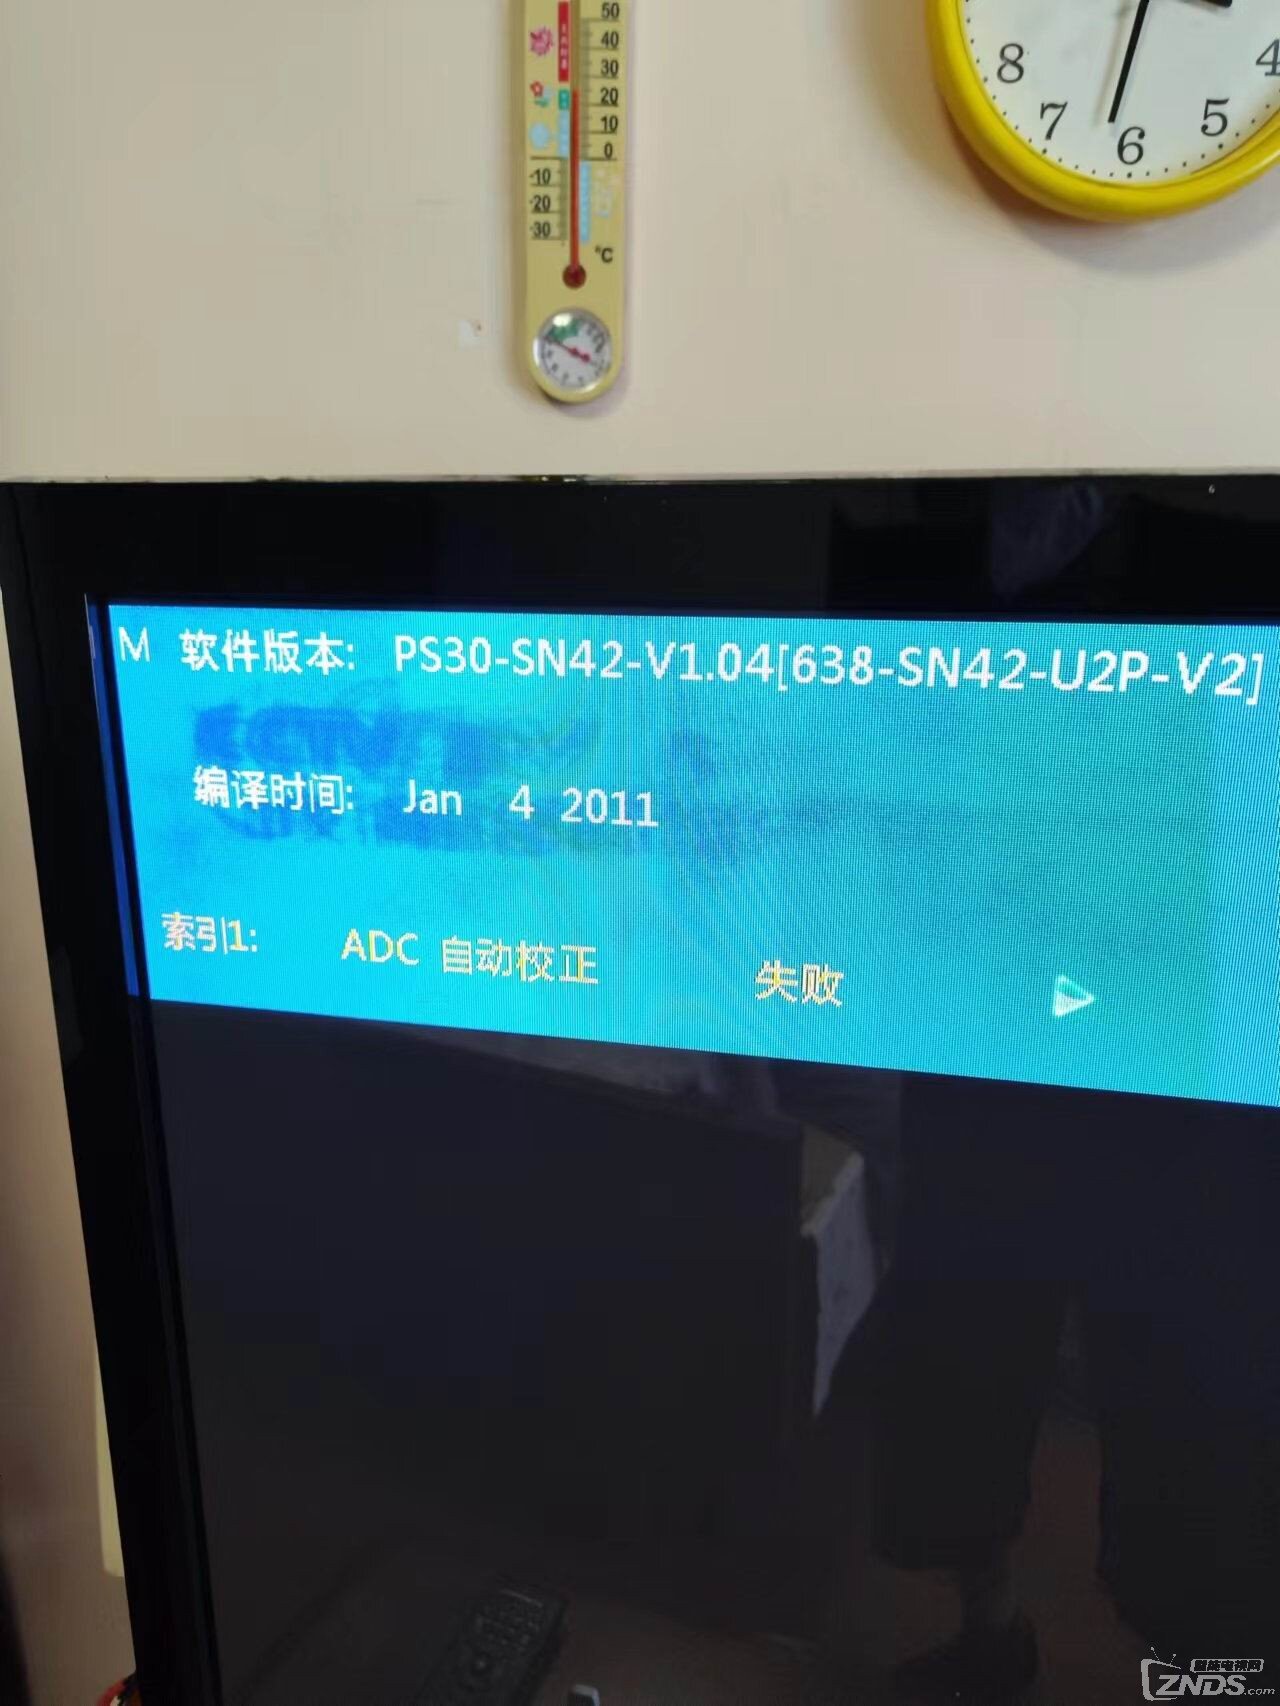 故障【ADC 自动校准 失败】PS30-SN42-V1.04【原固件版本】2022.7.28.jpg